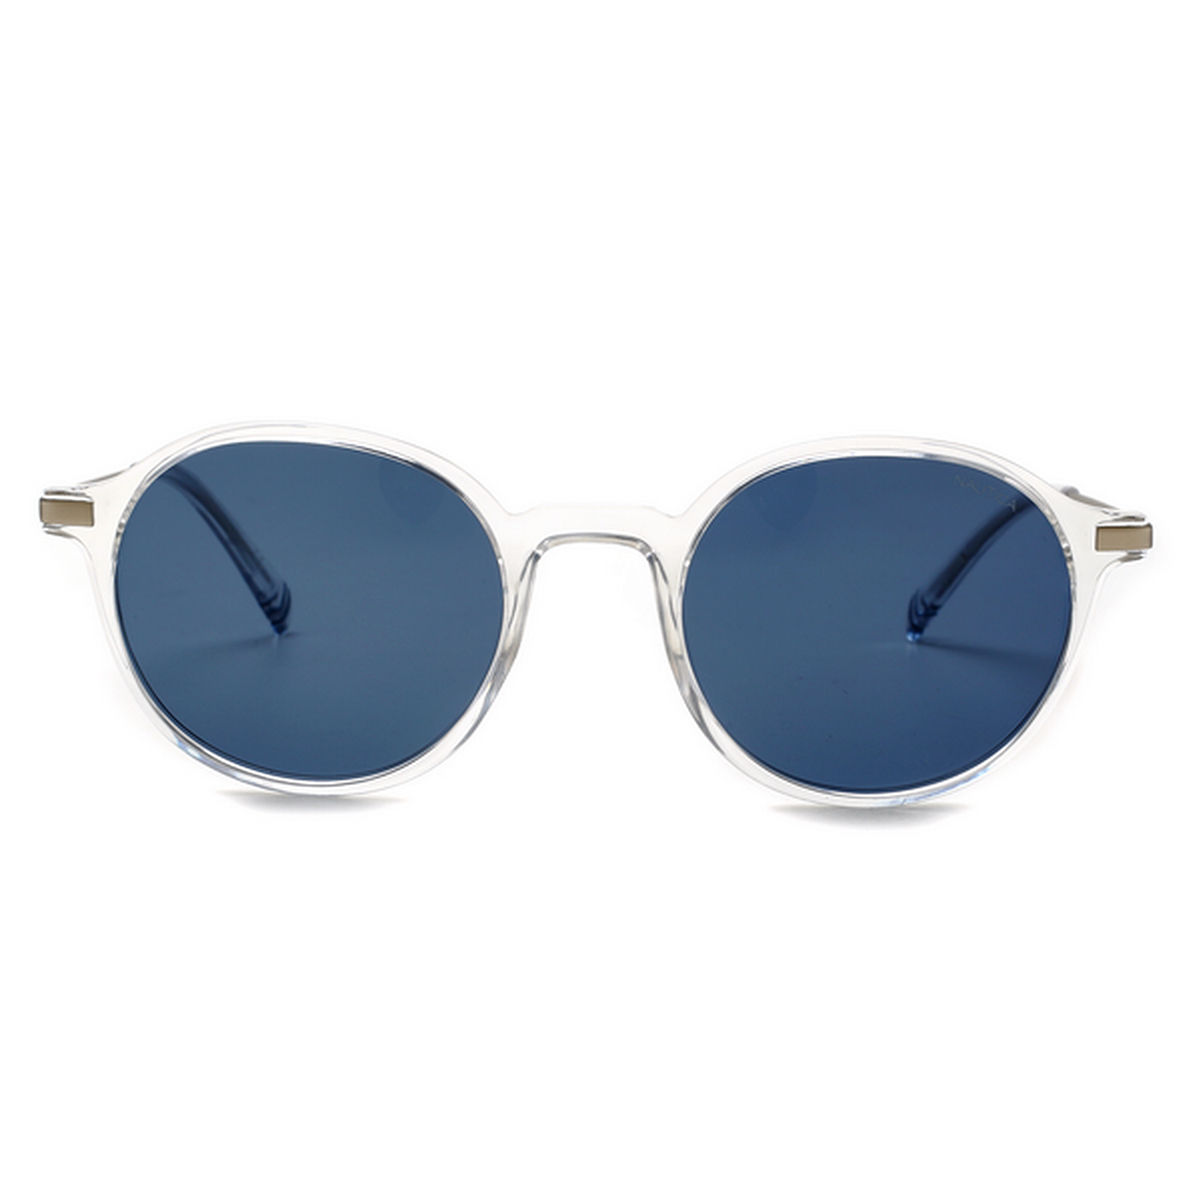 Share 138+ nautica sunglasses review super hot